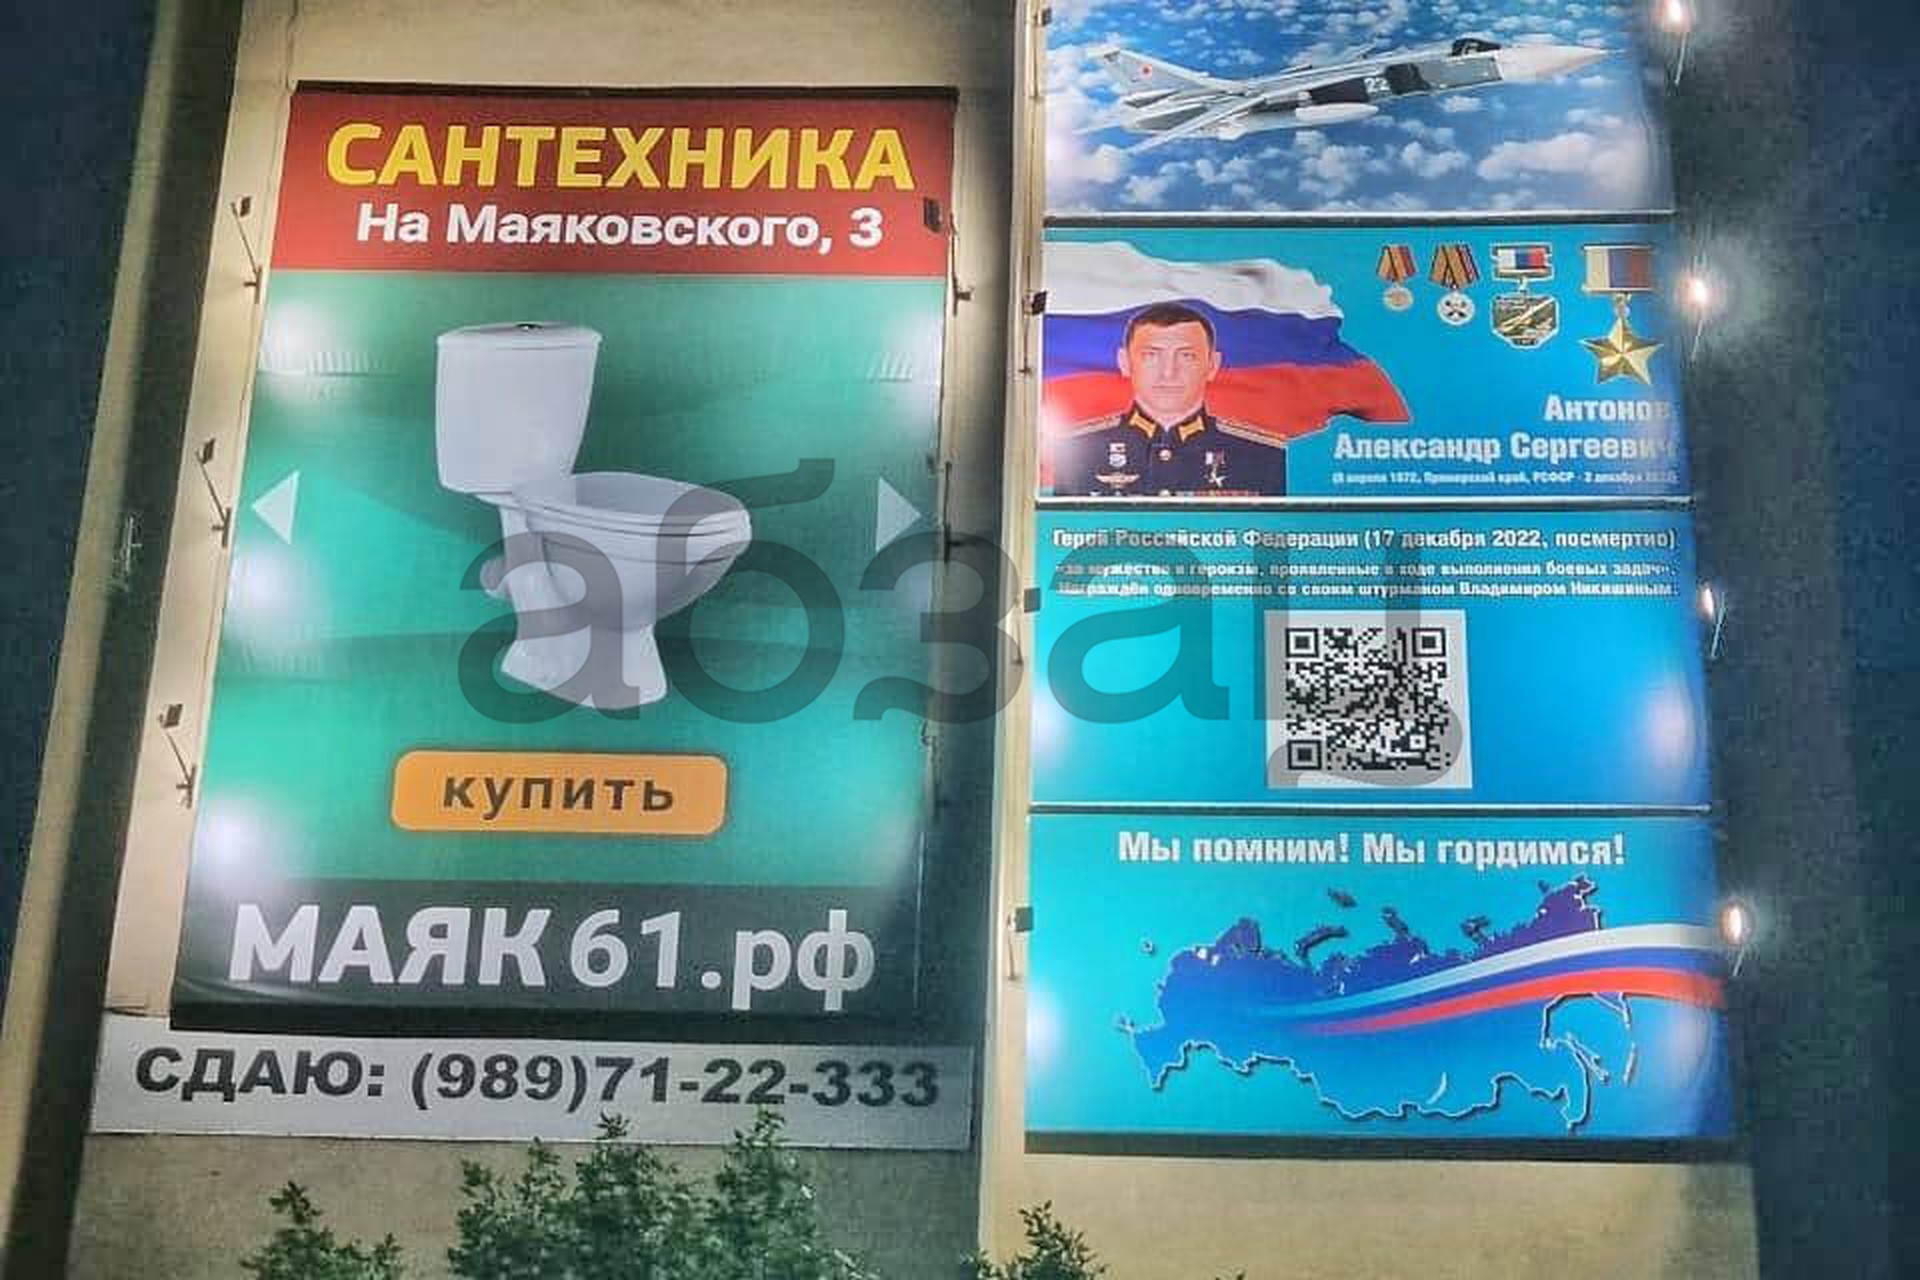 Жители Волгодонска возмущены размещением баннера о Герое России рядом с рекламой унитаза